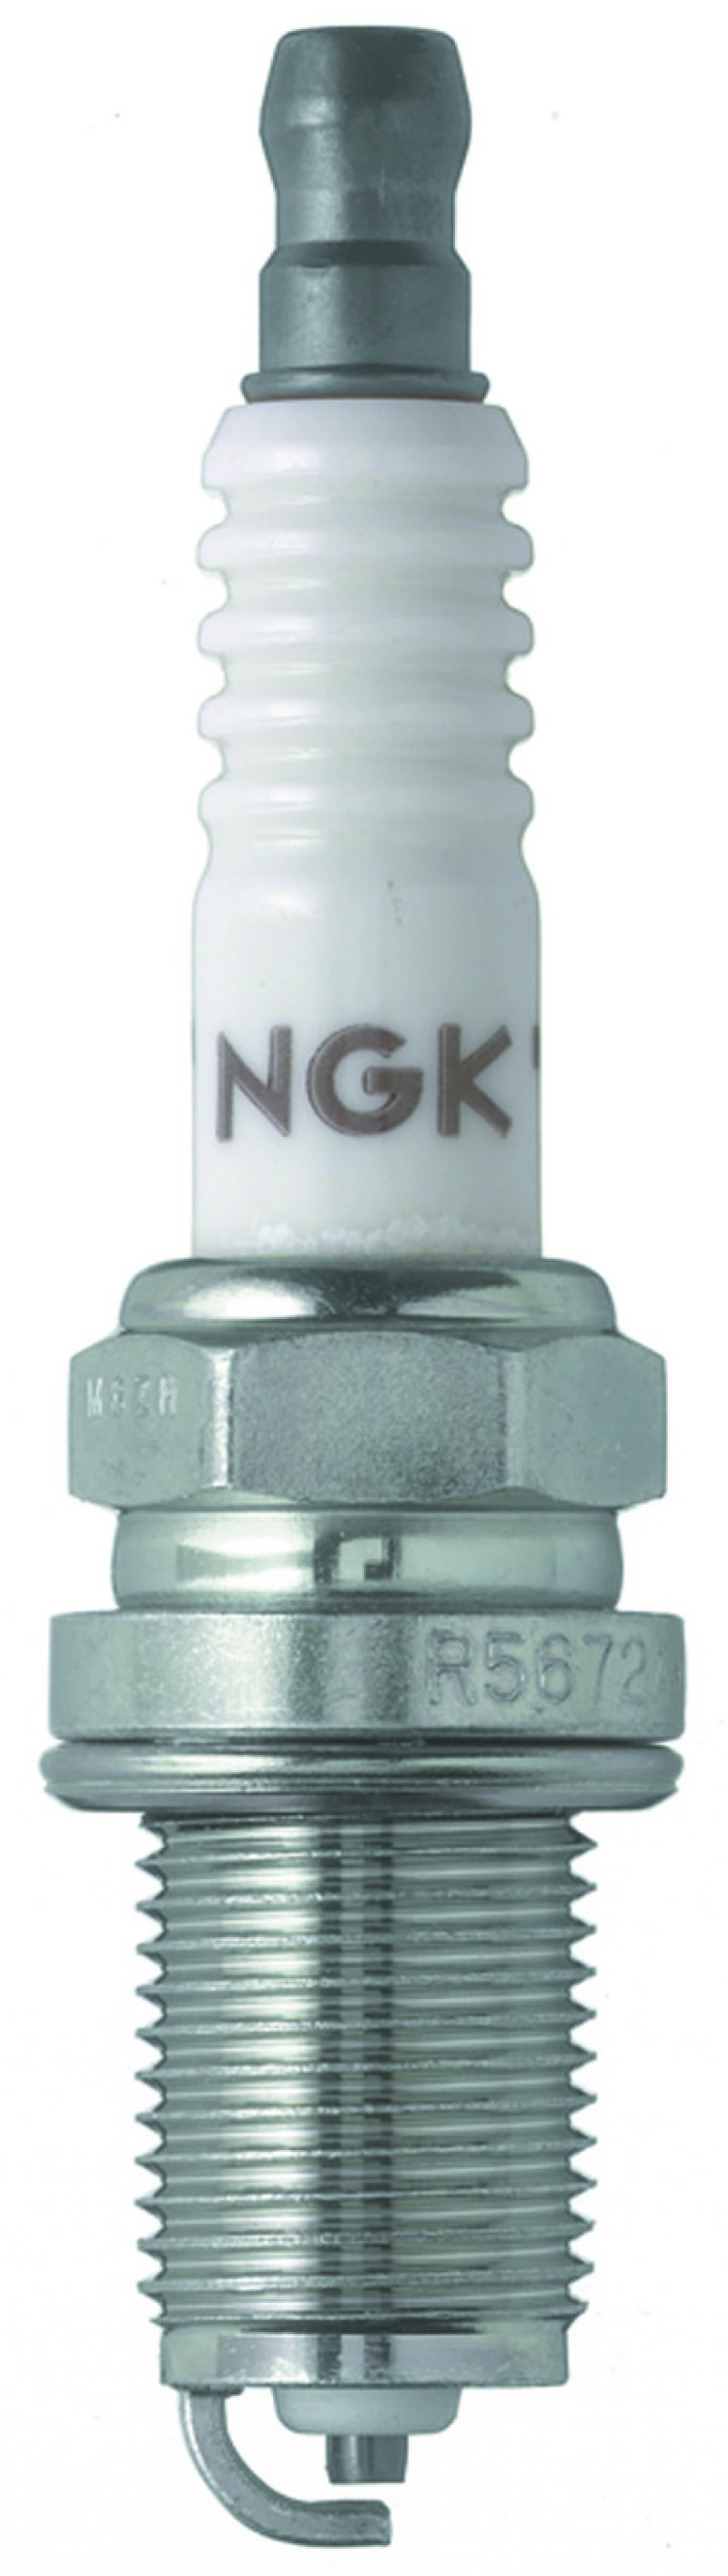 NGK Racing Spark Plug Box of 4 (R5672A-9) - 7405